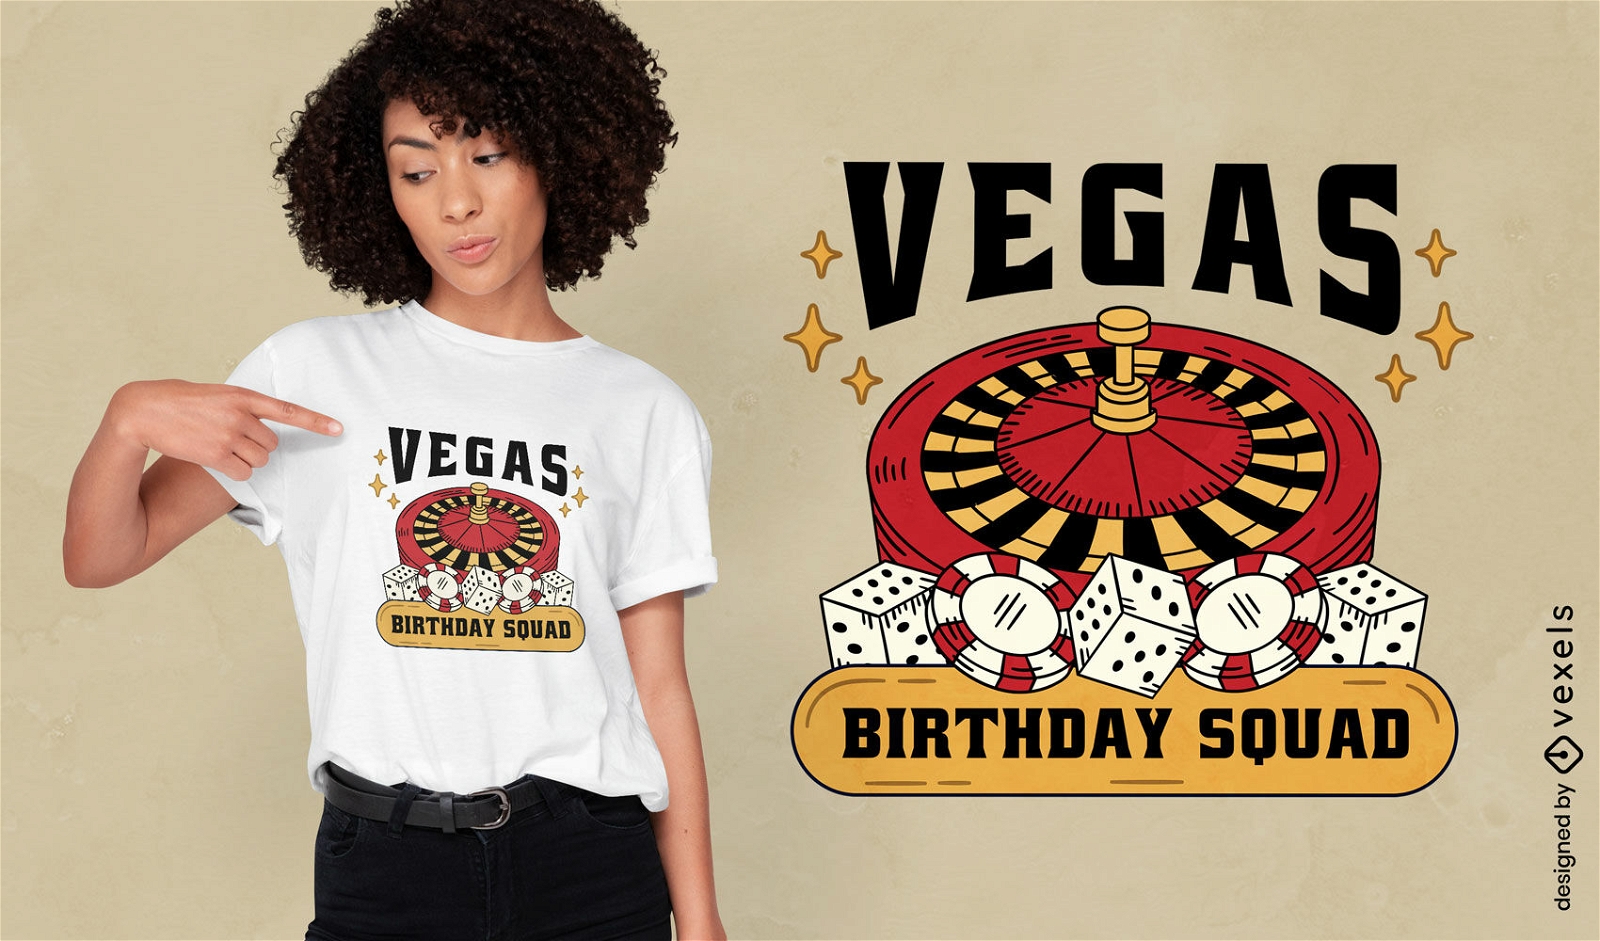 Dise?o de camiseta de celebraci?n de cumplea?os de Las Vegas.